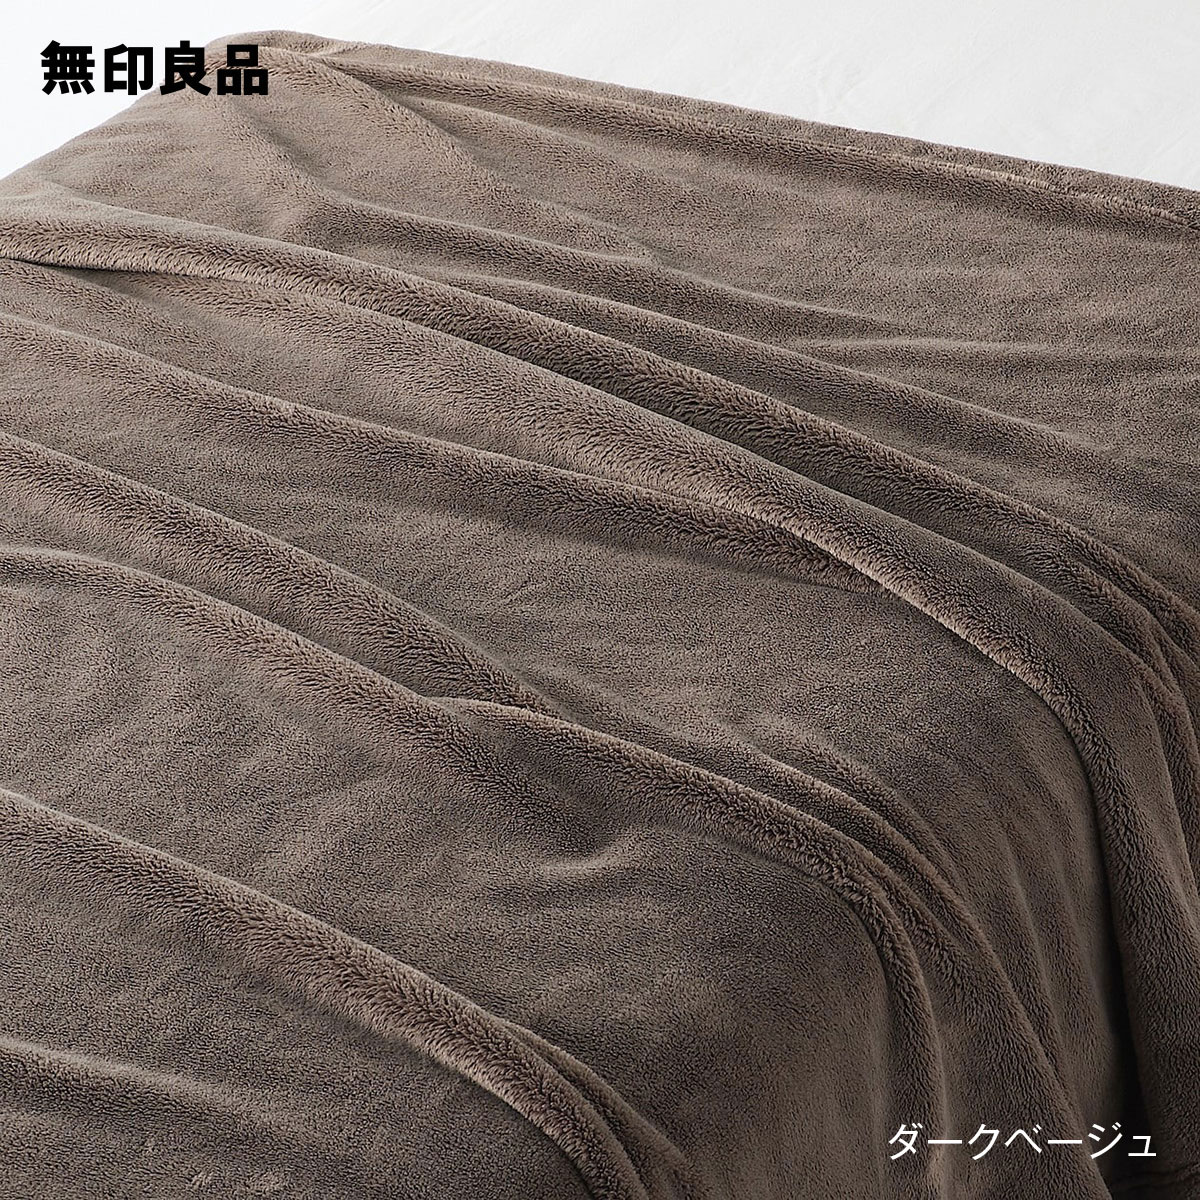 【無印良品 公式】ムレにくいあたたかファイバー厚手毛布・ダブル 180×200cmのサムネイル